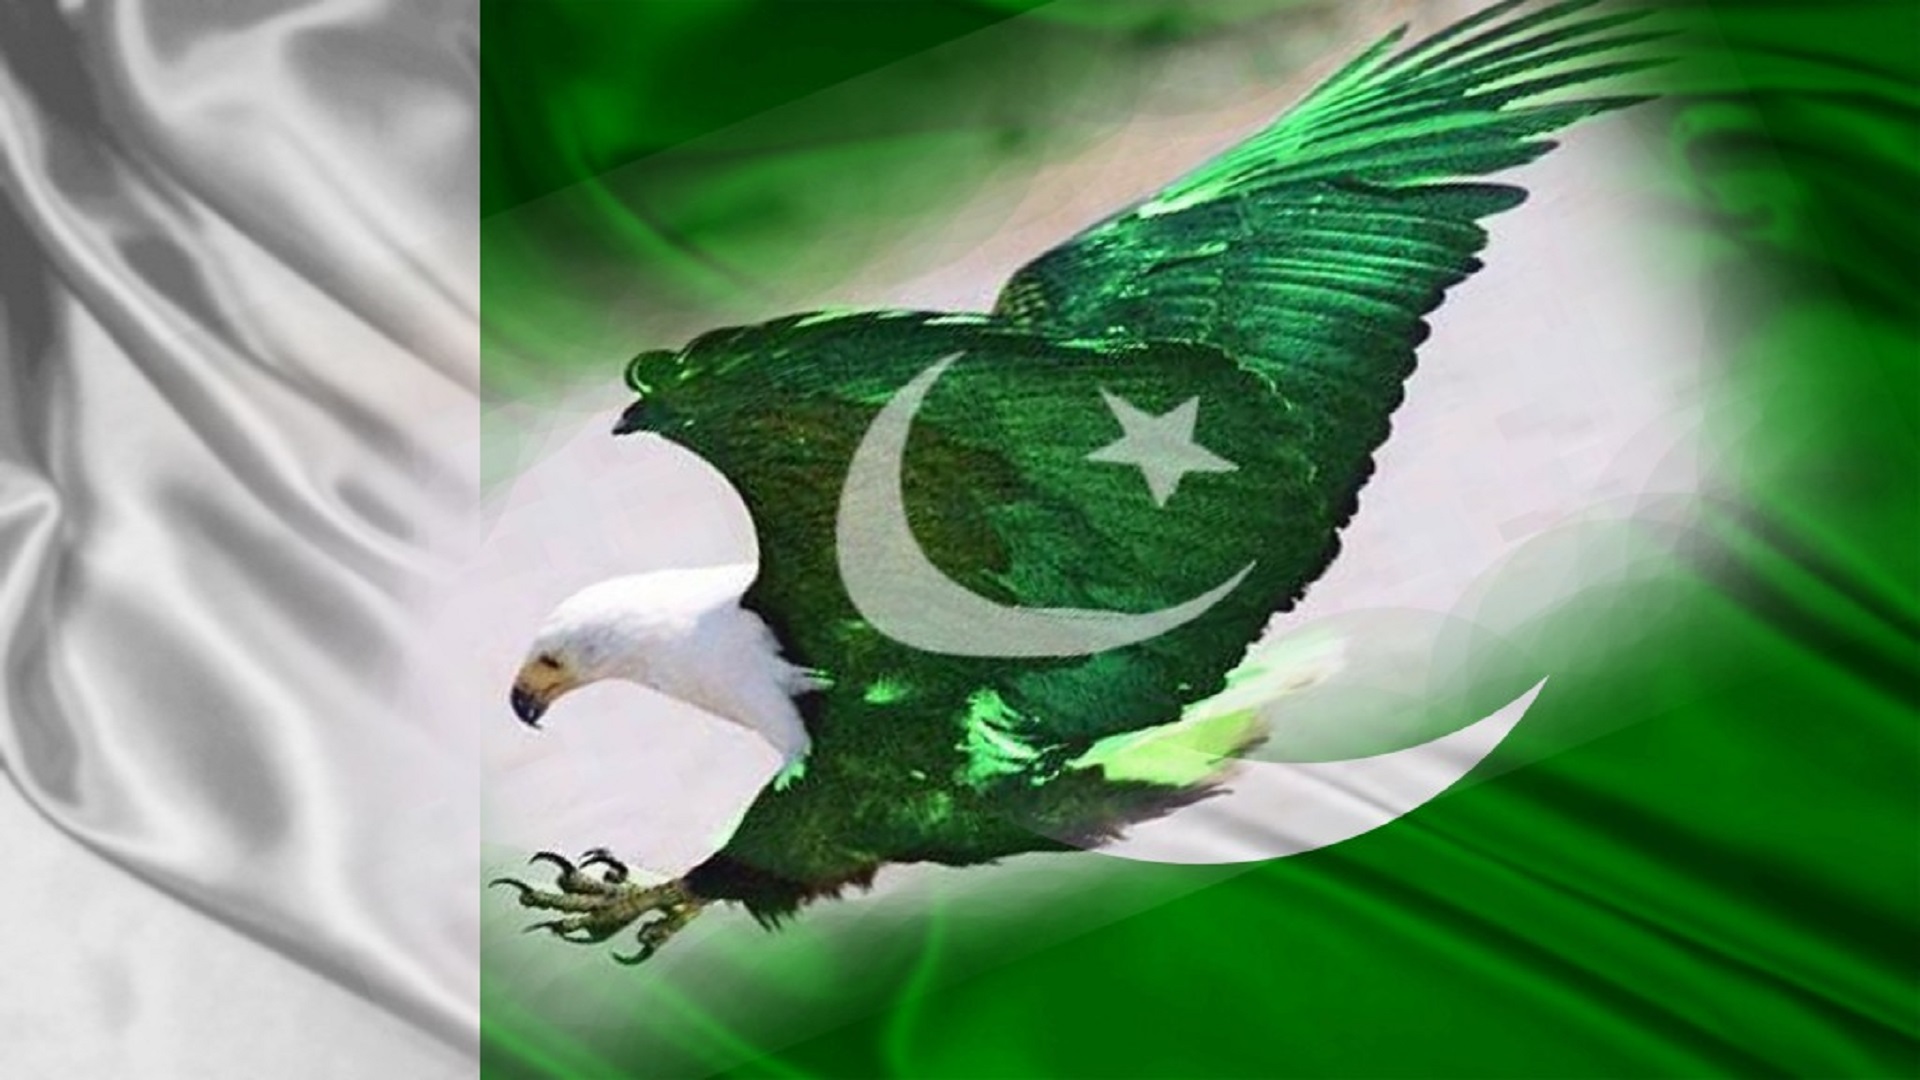 パキスタンの旗の壁紙,鳥,緑,鷲,羽,シンボル